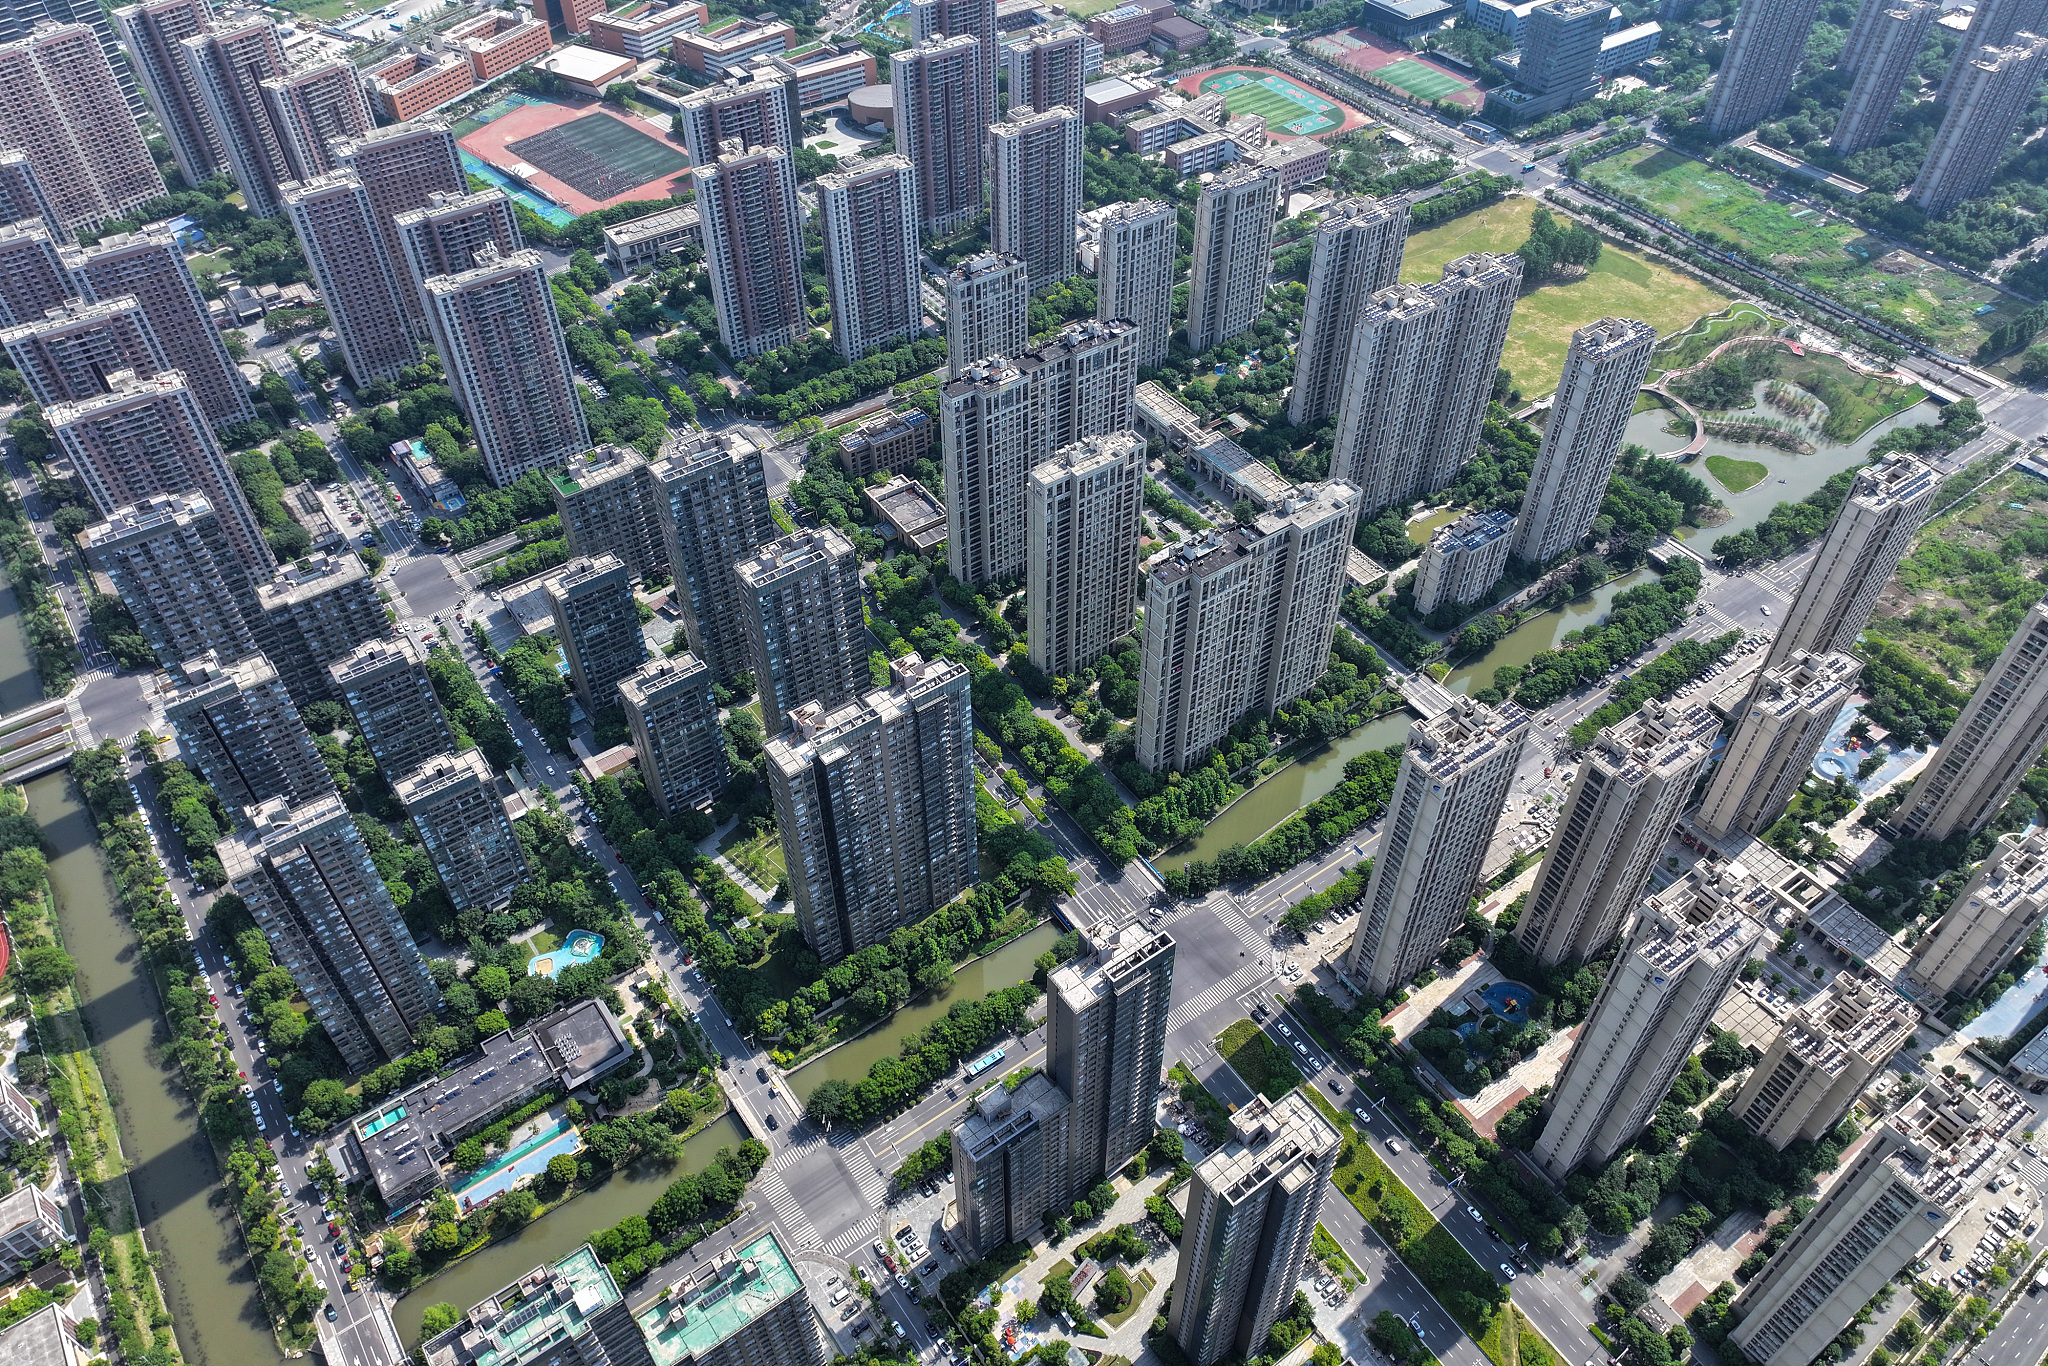 A bird's-eye view of a commercial housing development in Nanjing, Jiangsu Province on May 17. /CFP